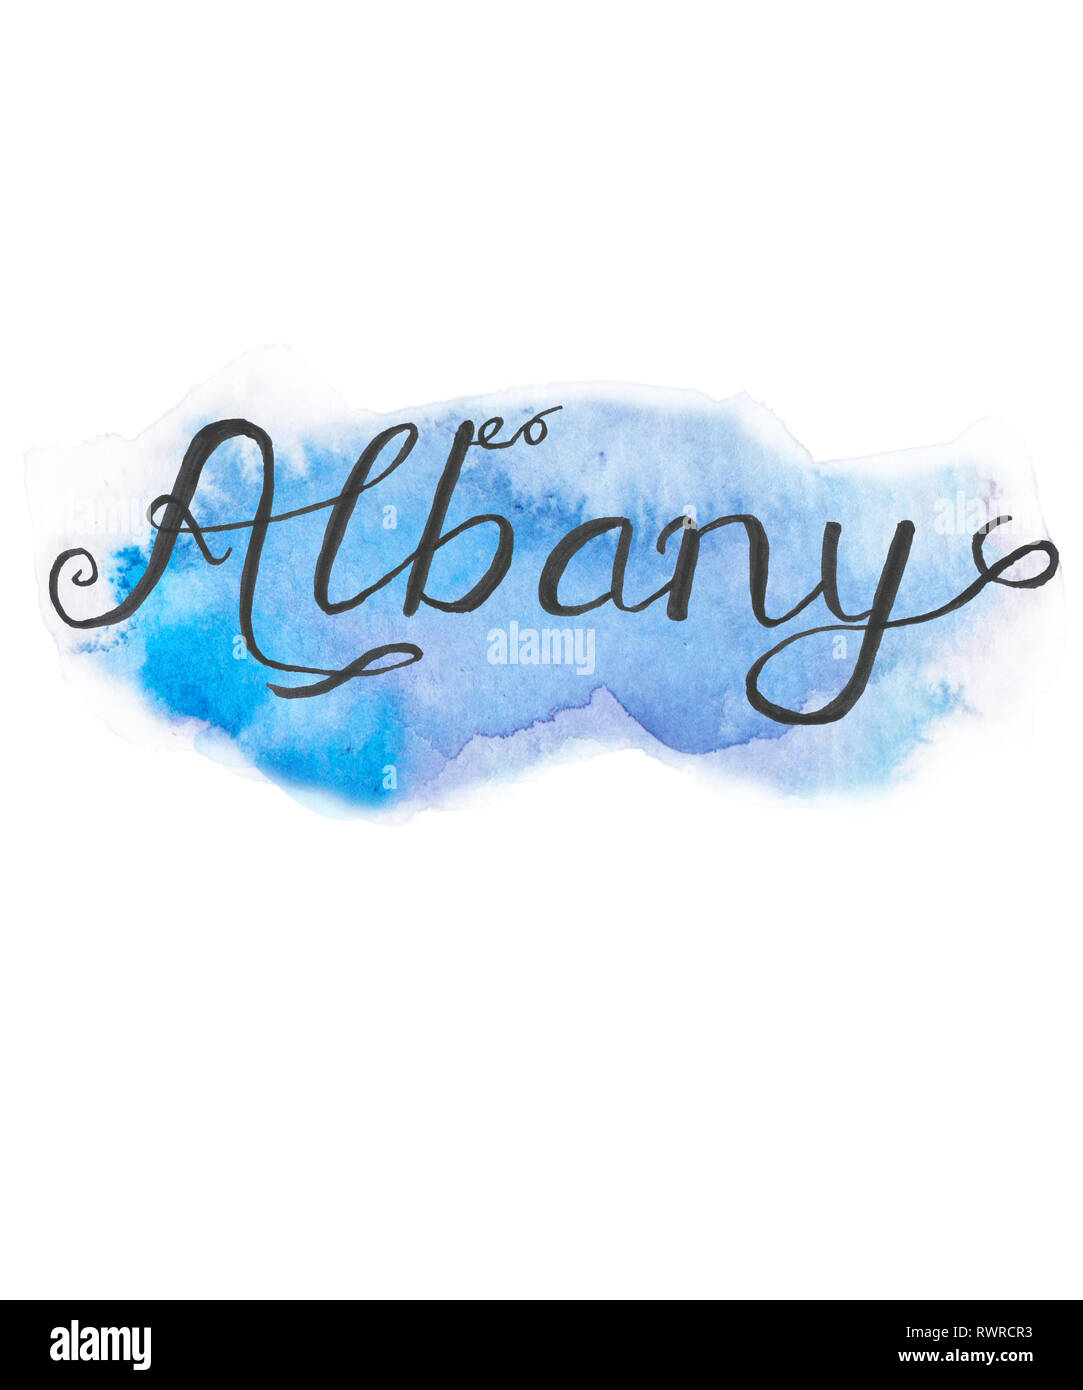 La ville d'Albany en calligraphie manuscrite script sur un fond peint à l'aquarelle bleue. De nombreux états et pays ont Albany. Banque D'Images